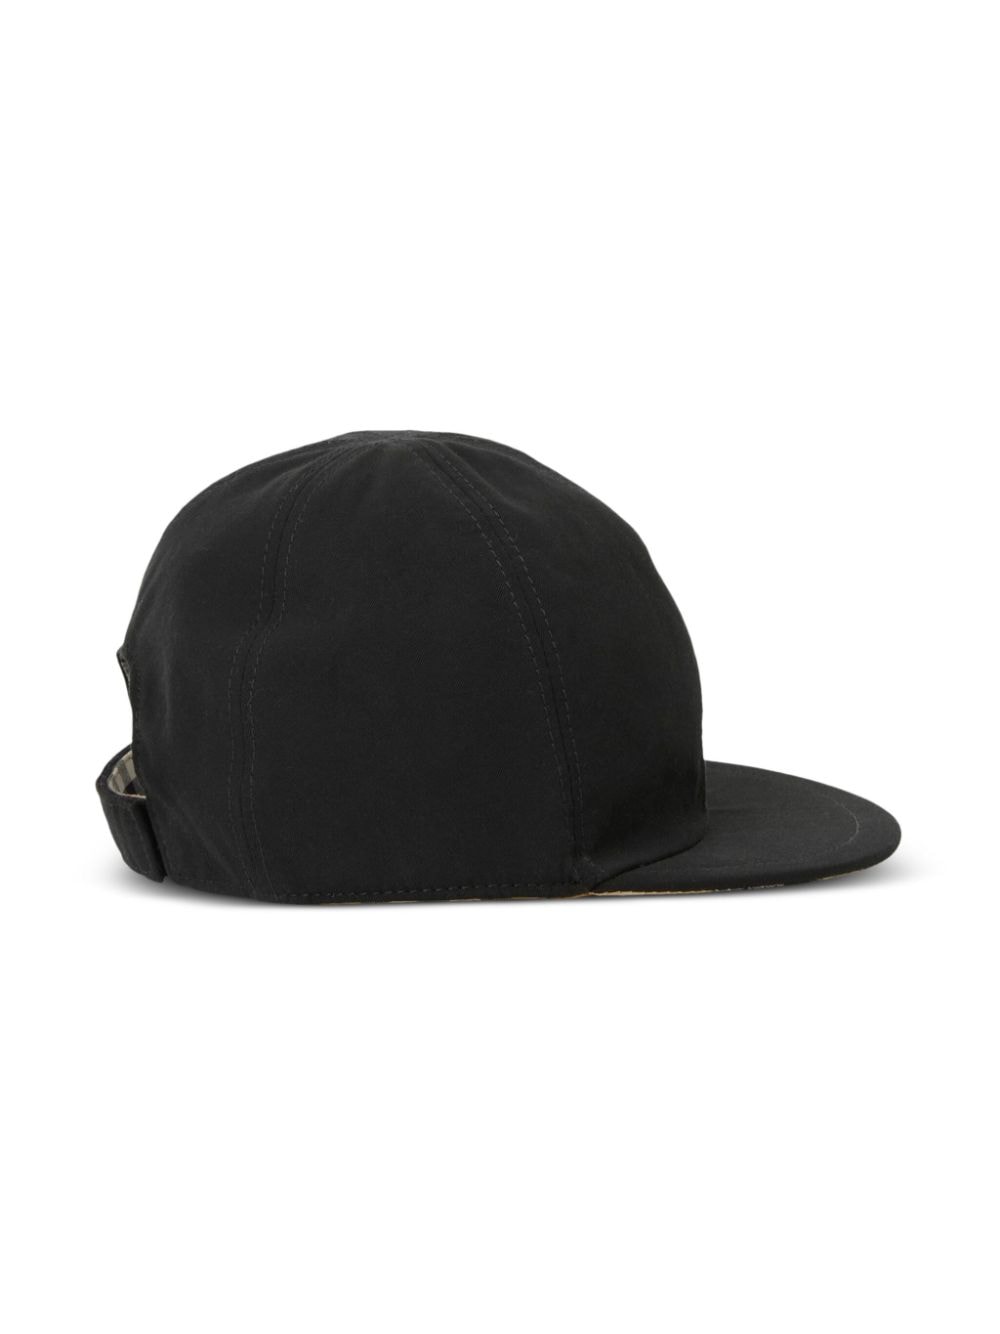 Cappellino da baseball nero per bambino